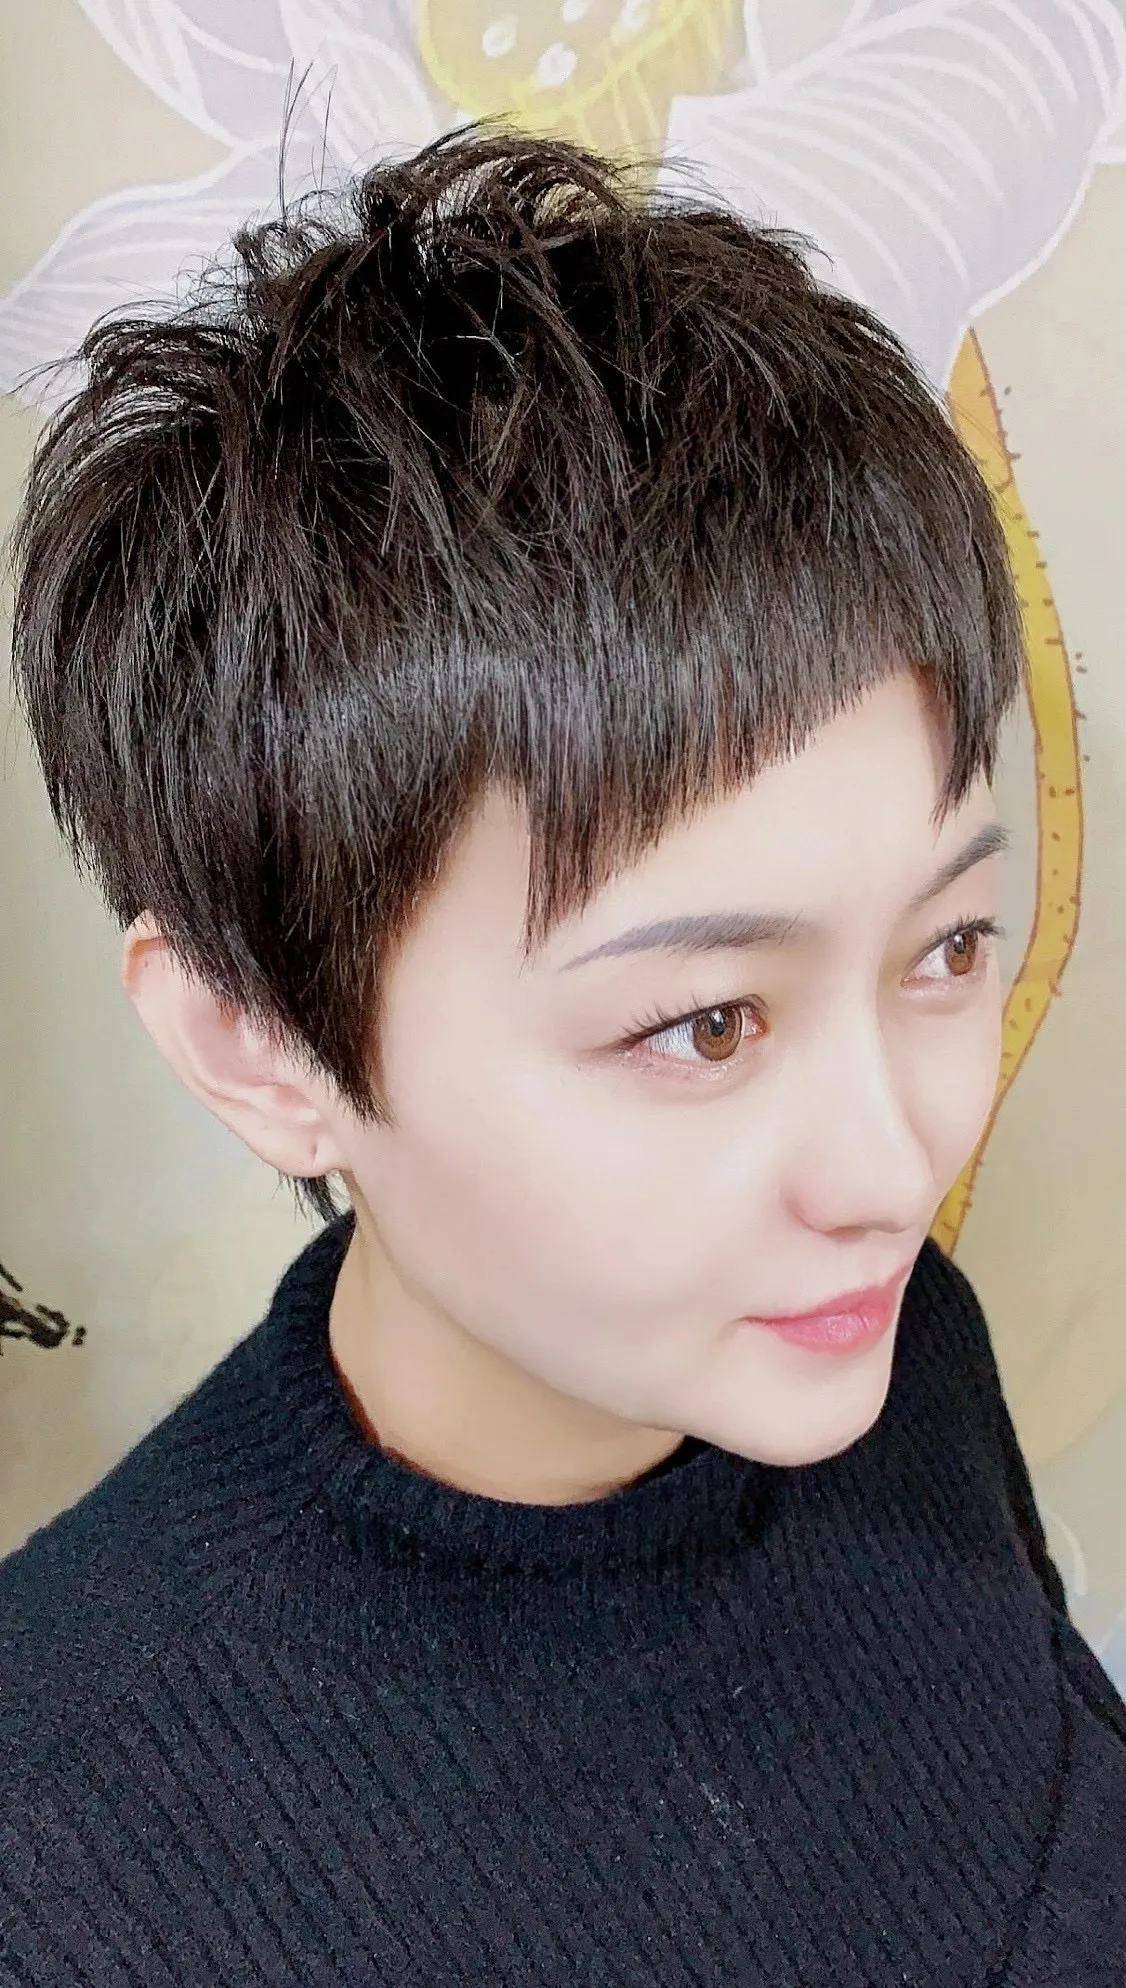 年轻女性剪短发的时候就要表达出自己的个性 ,不规则的刘海很有视觉